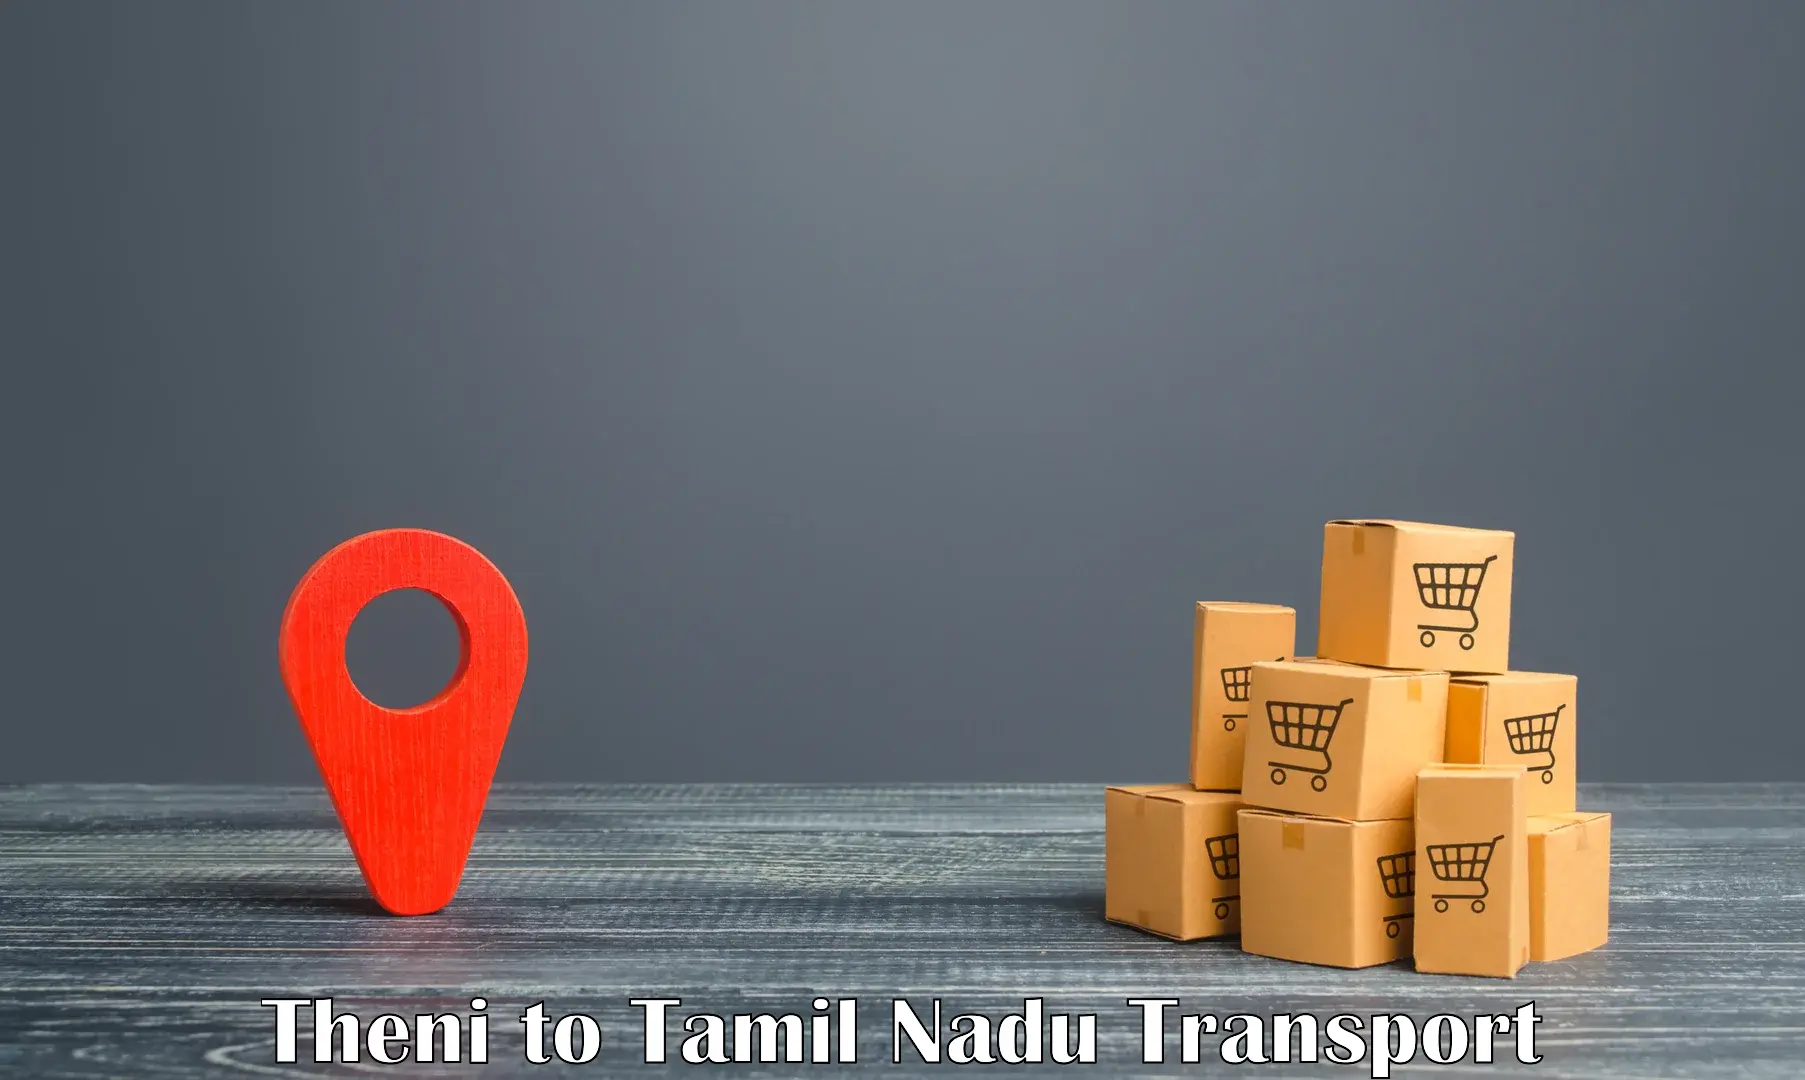 Truck transport companies in India Theni to The Gandhigram Rural Institute